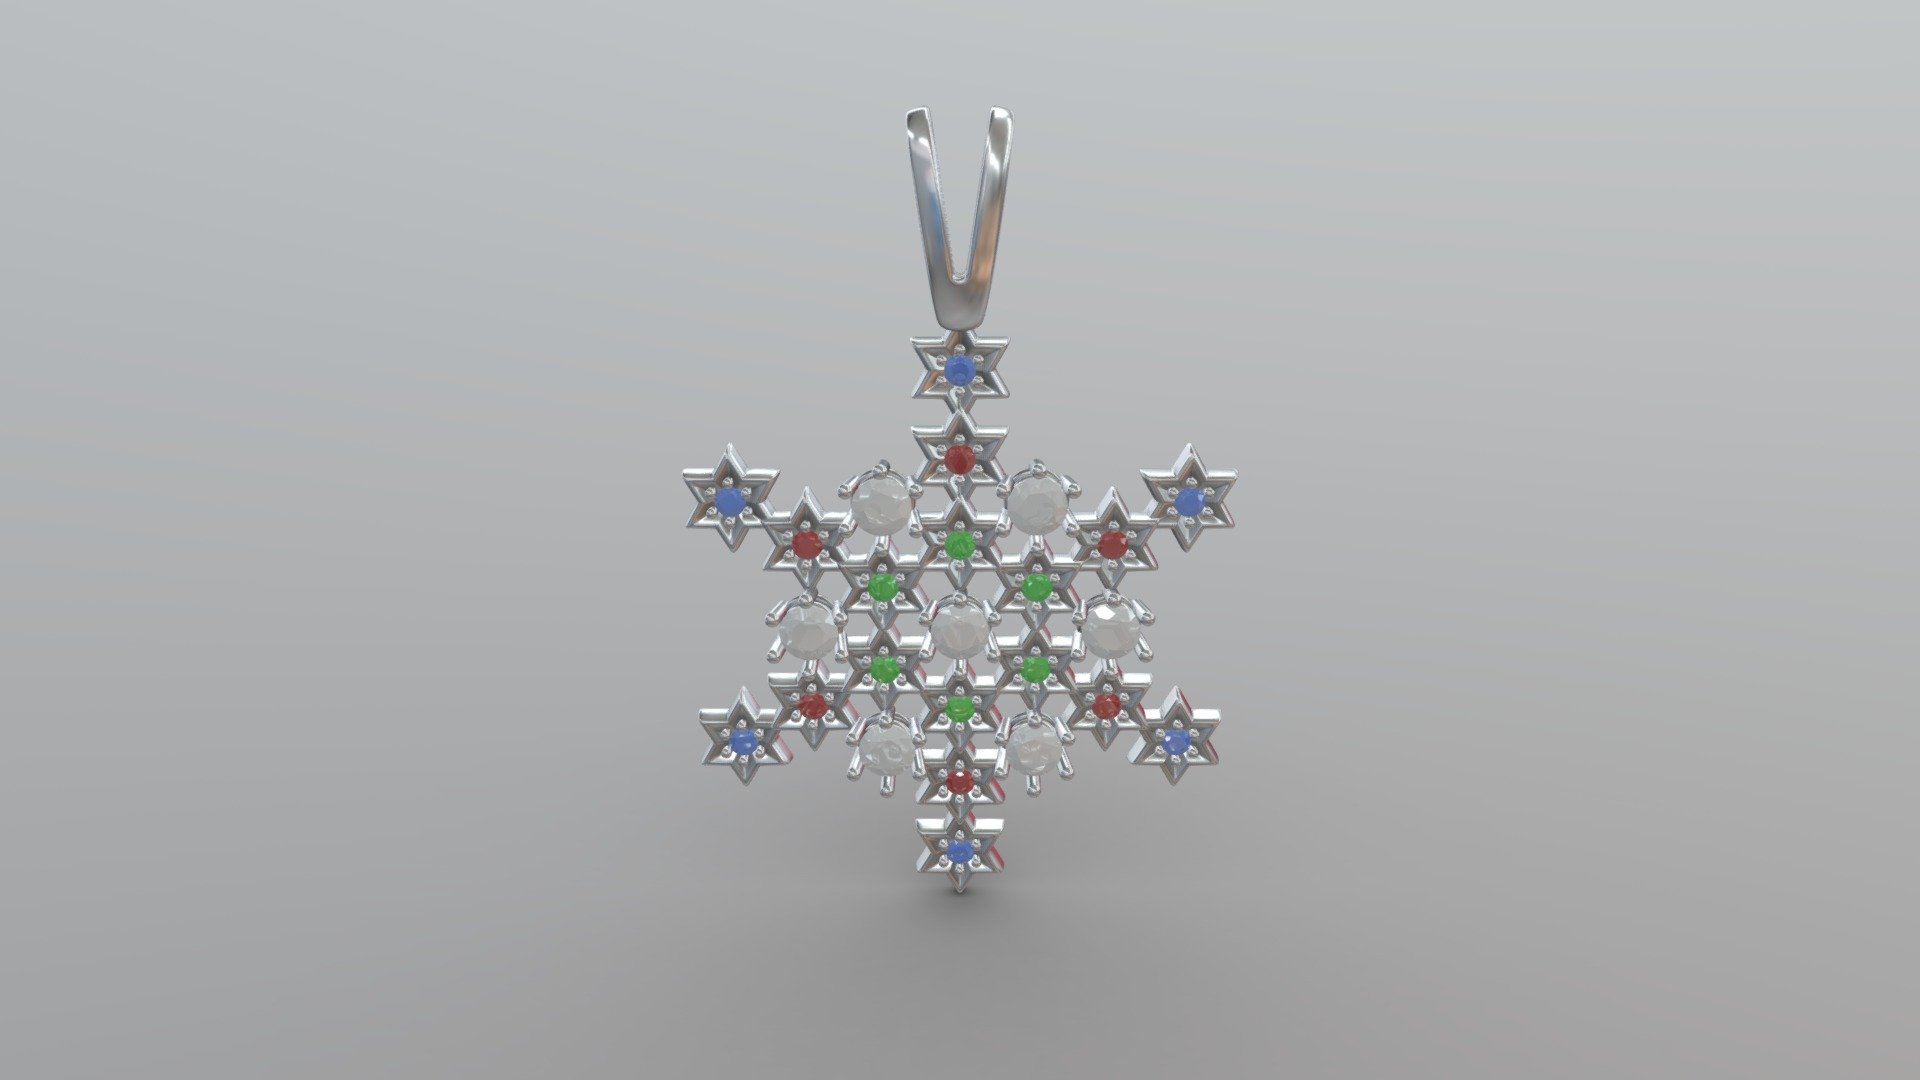 Puedes comprar nuestras joyas:
https://jvjewel.com/es/colgantes/colgante-circular-stars-98

Gracias por visitarnos.

You can buy our jewels:
https://jvjewel.com/en/pendants/circular-stars-pendant-98

Thank you for watching 3d model